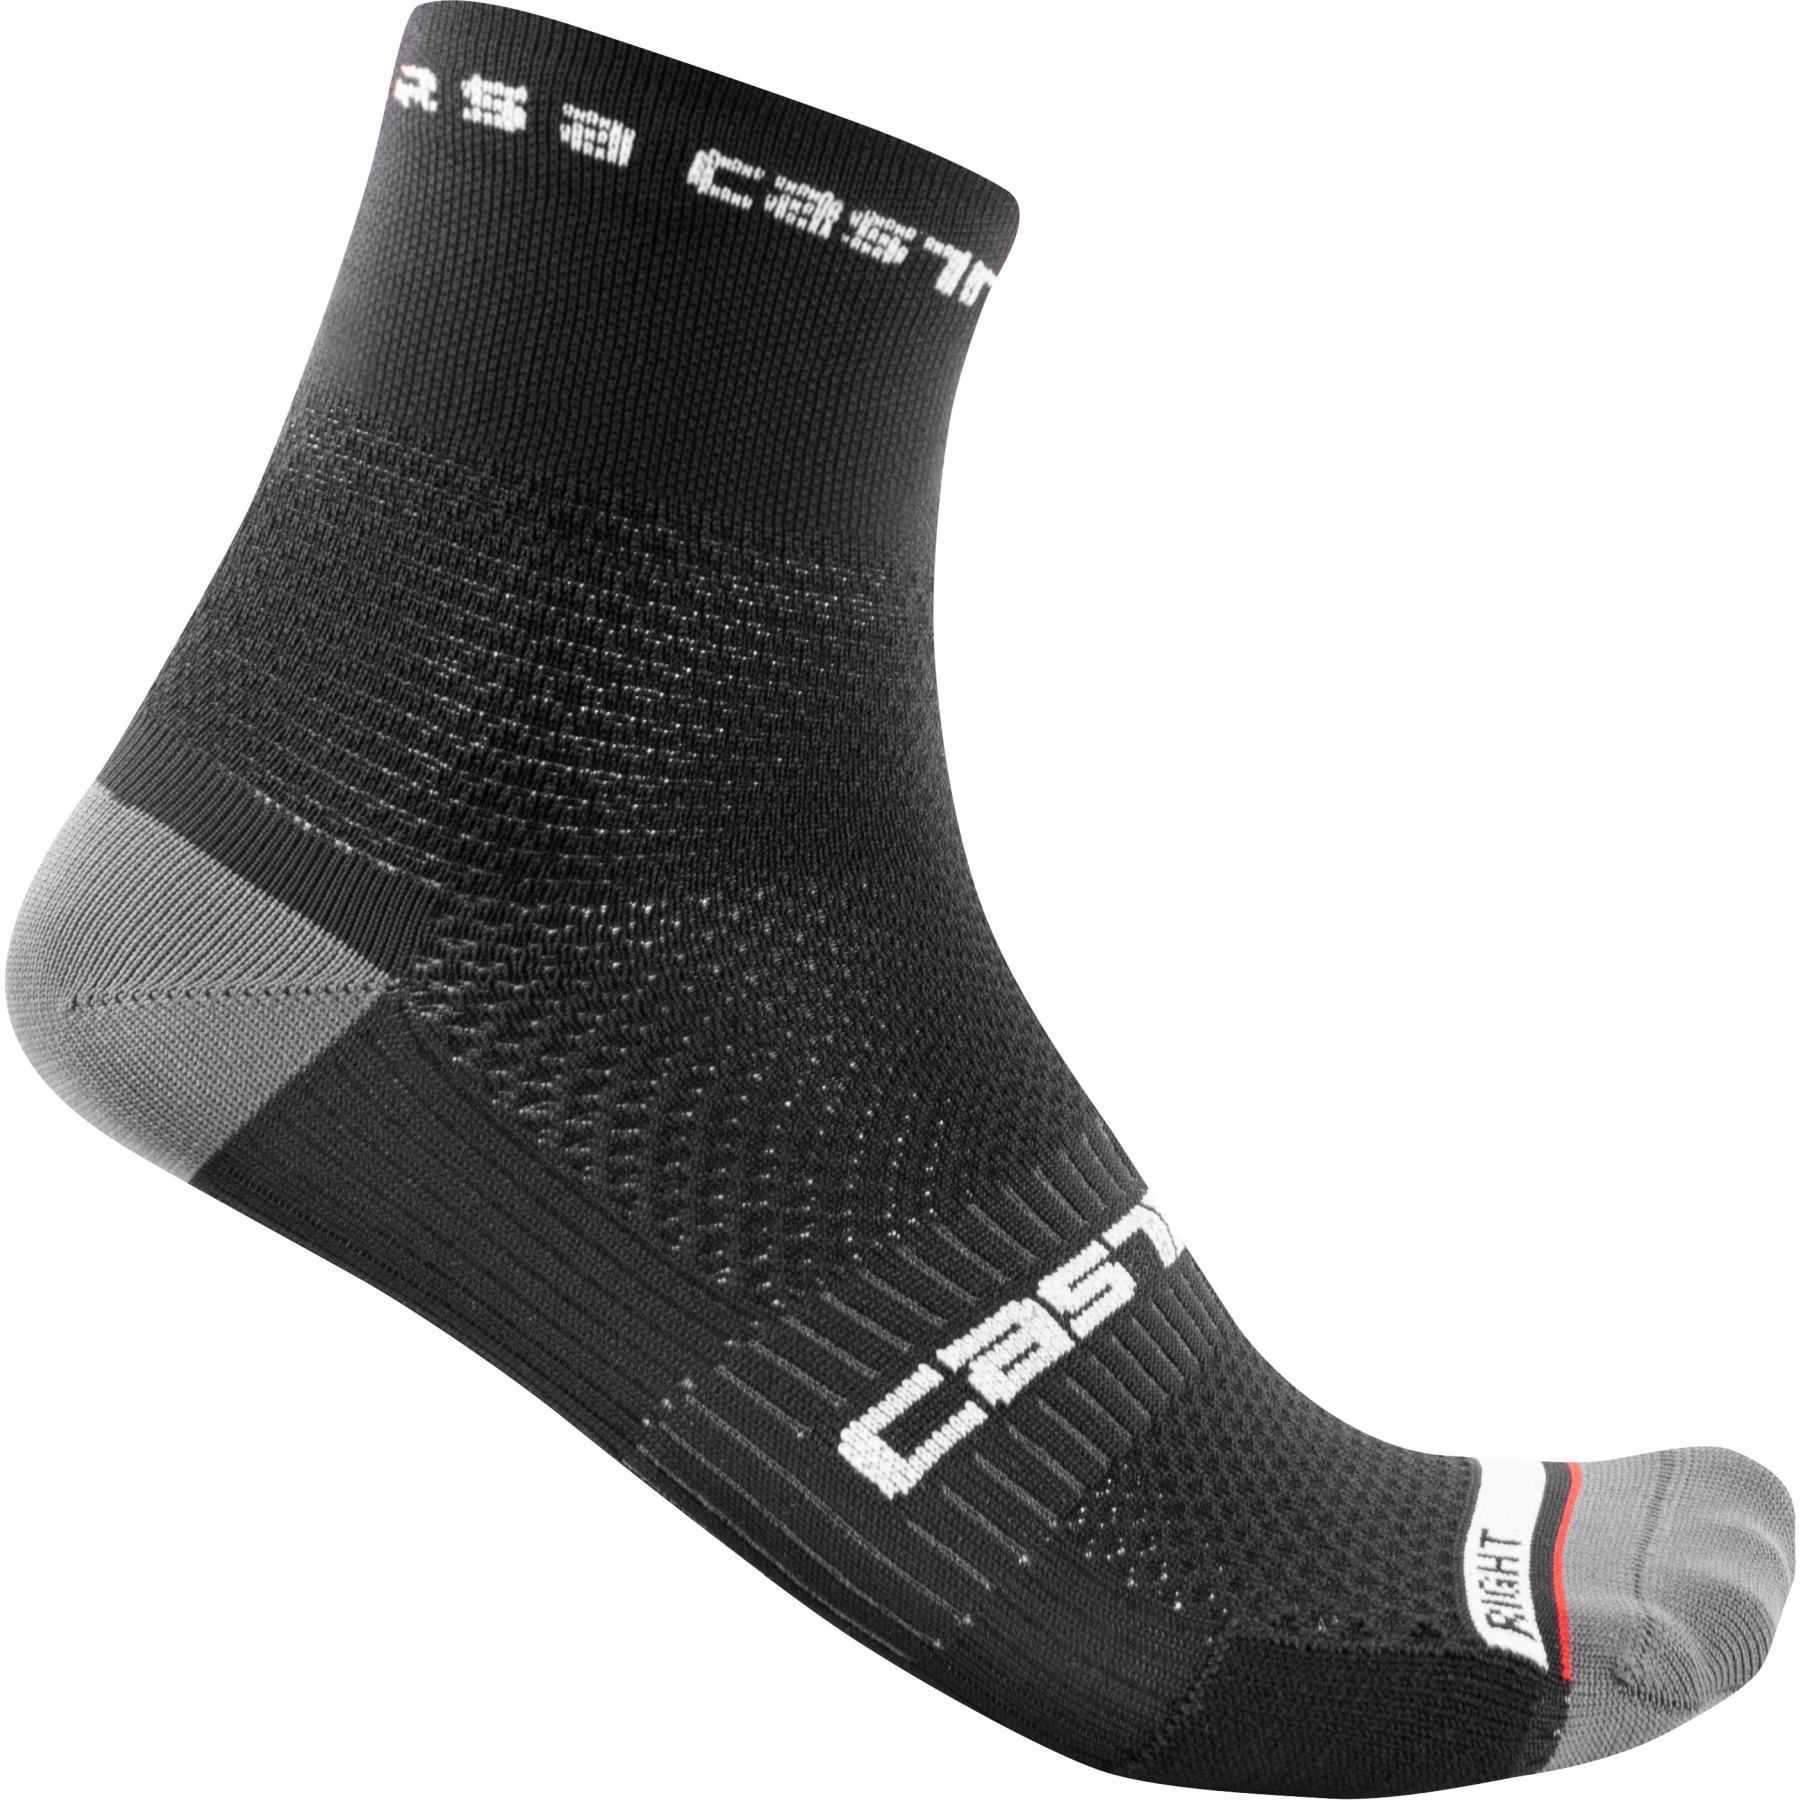 Picture of Castelli Rosso Corsa Pro 9 Socks - black 010